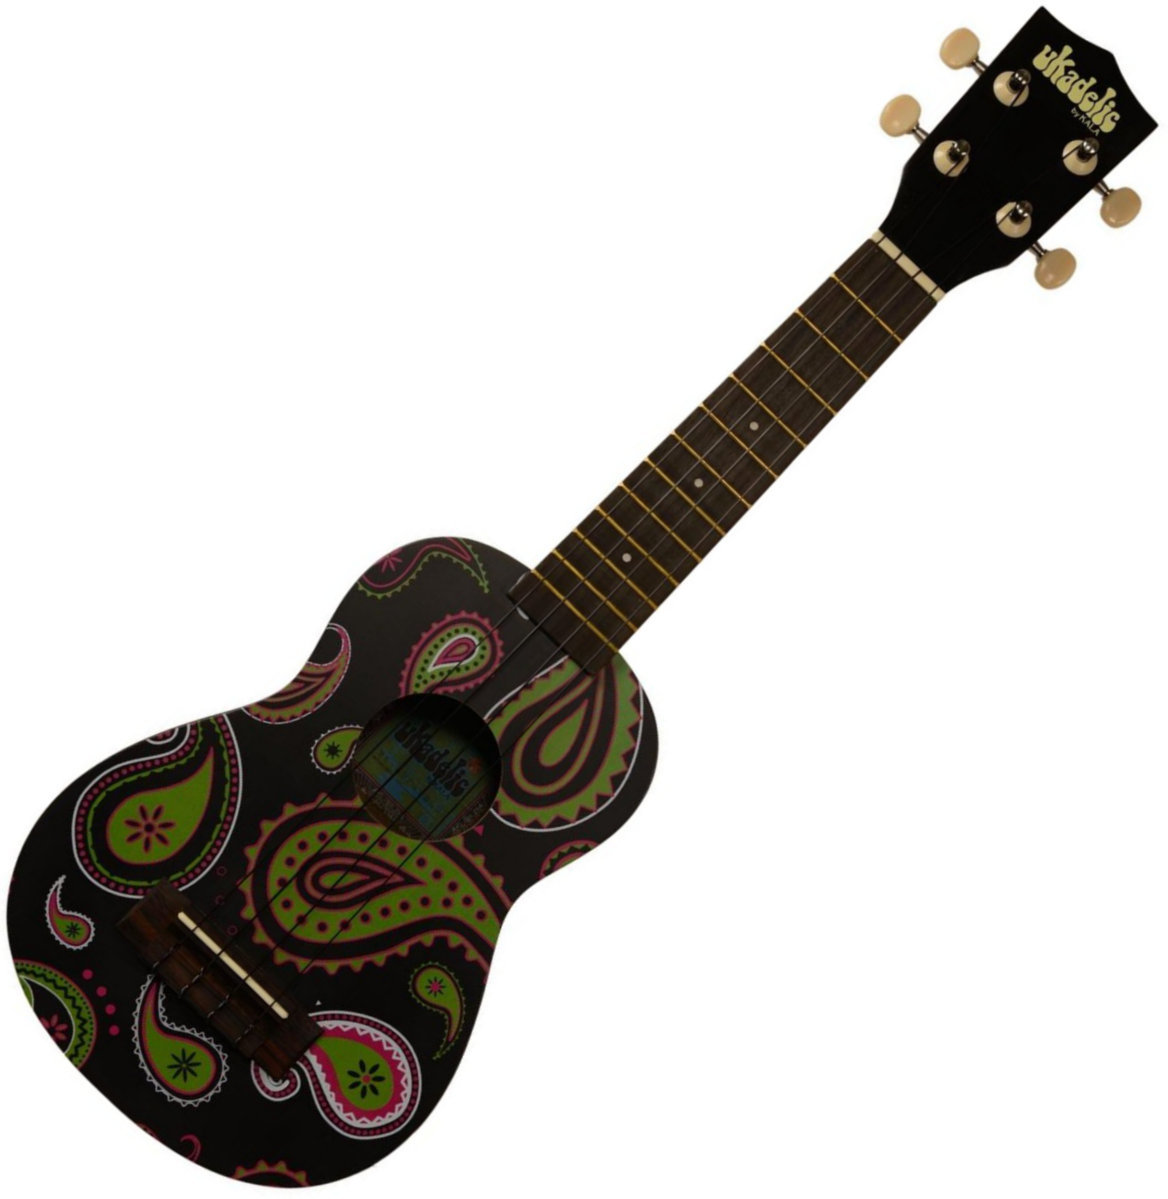 Soprano ukulele Kala Ukadelic Soprano Bright Pink and Green Paisleys on Black